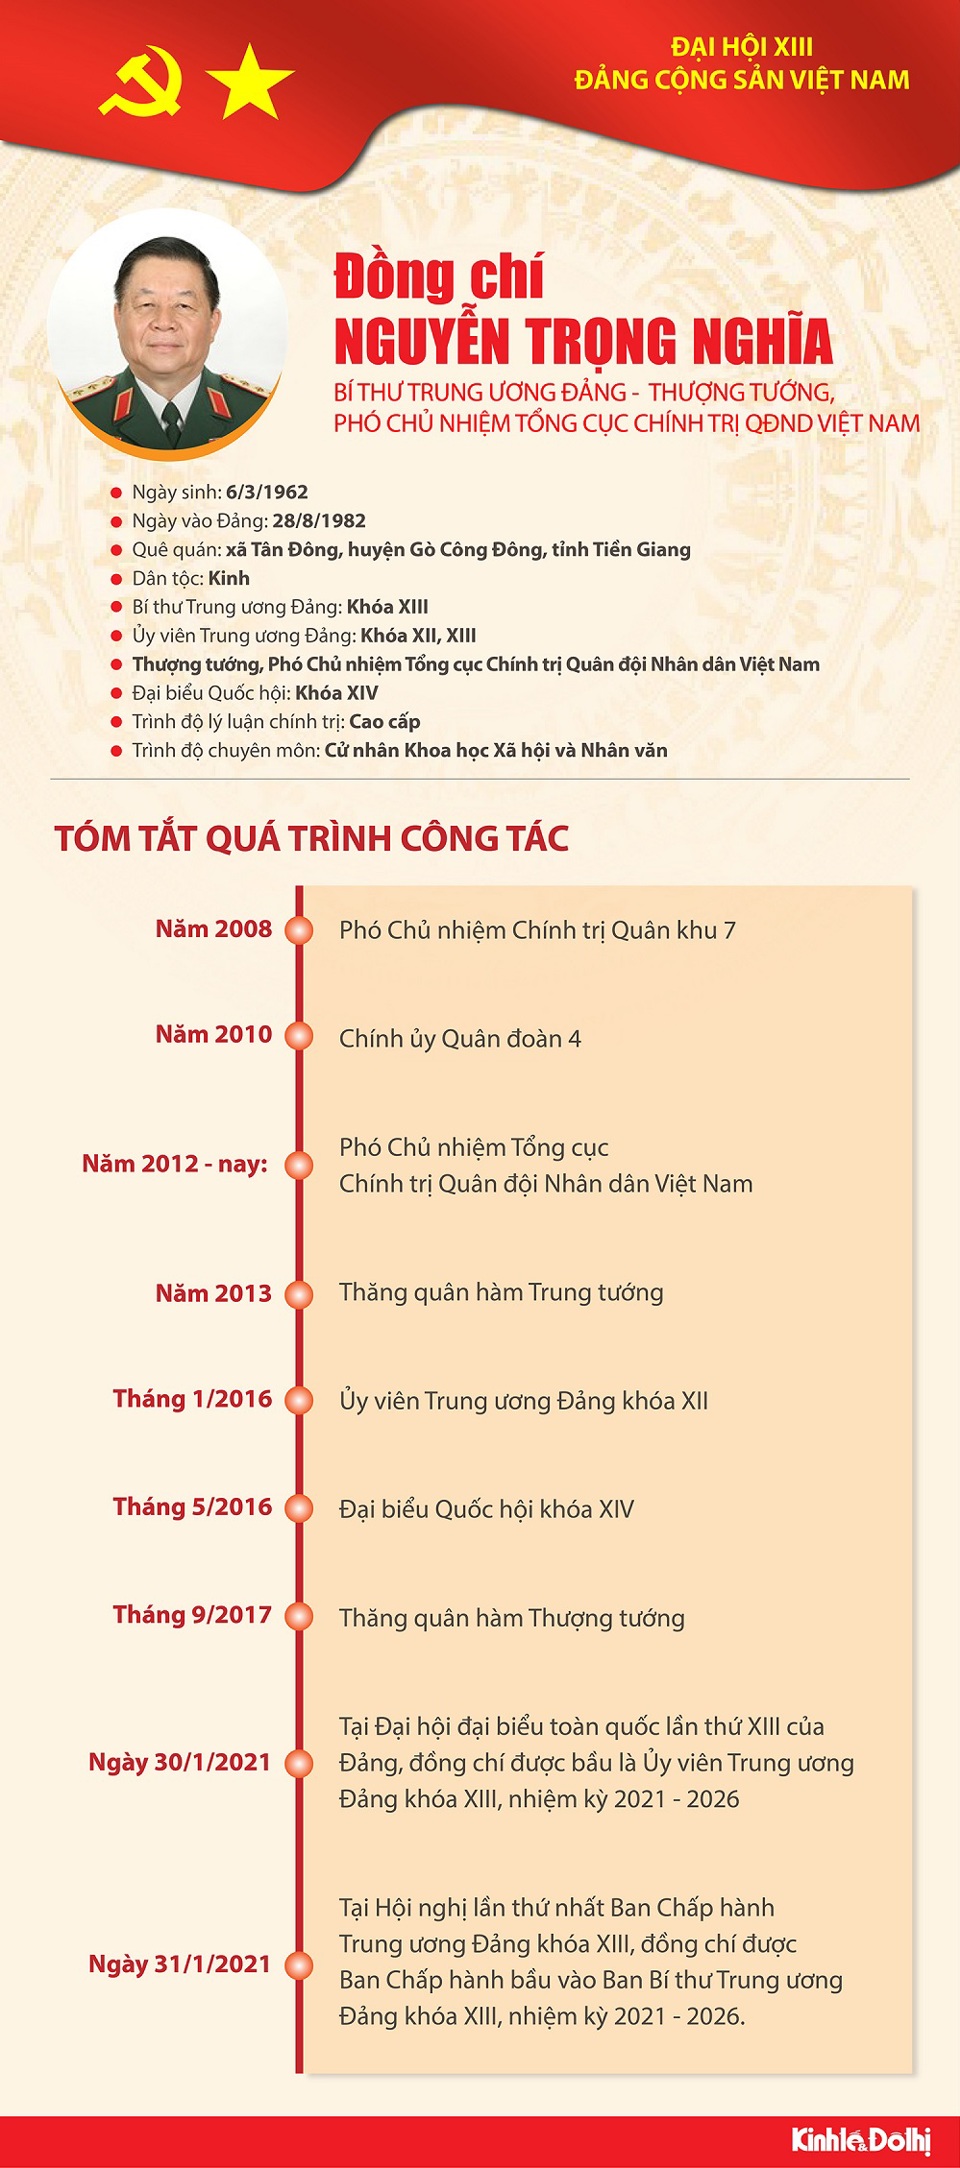 [Infographic] Quá trình công tác Bí thư Trung ương Đảng Nguyễn Trọng Nghĩa - Ảnh 1